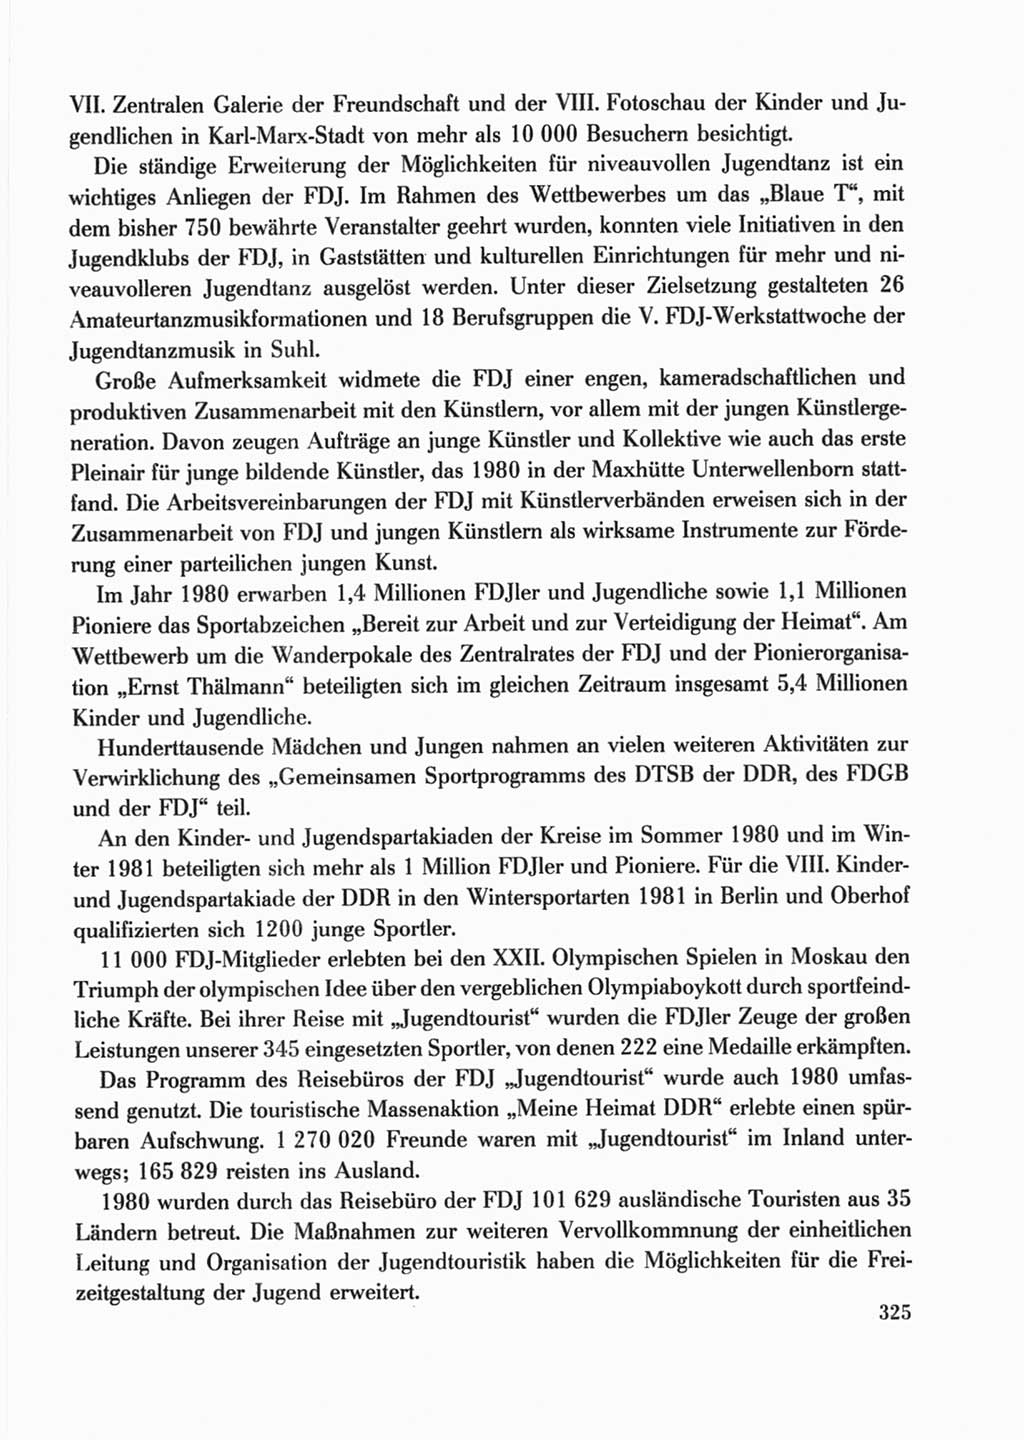 Protokoll der Verhandlungen des Ⅹ. Parteitages der Sozialistischen Einheitspartei Deutschlands (SED) [Deutsche Demokratische Republik (DDR)] 1981, Band 2, Seite 325 (Prot. Verh. Ⅹ. PT SED DDR 1981, Bd. 2, S. 325)